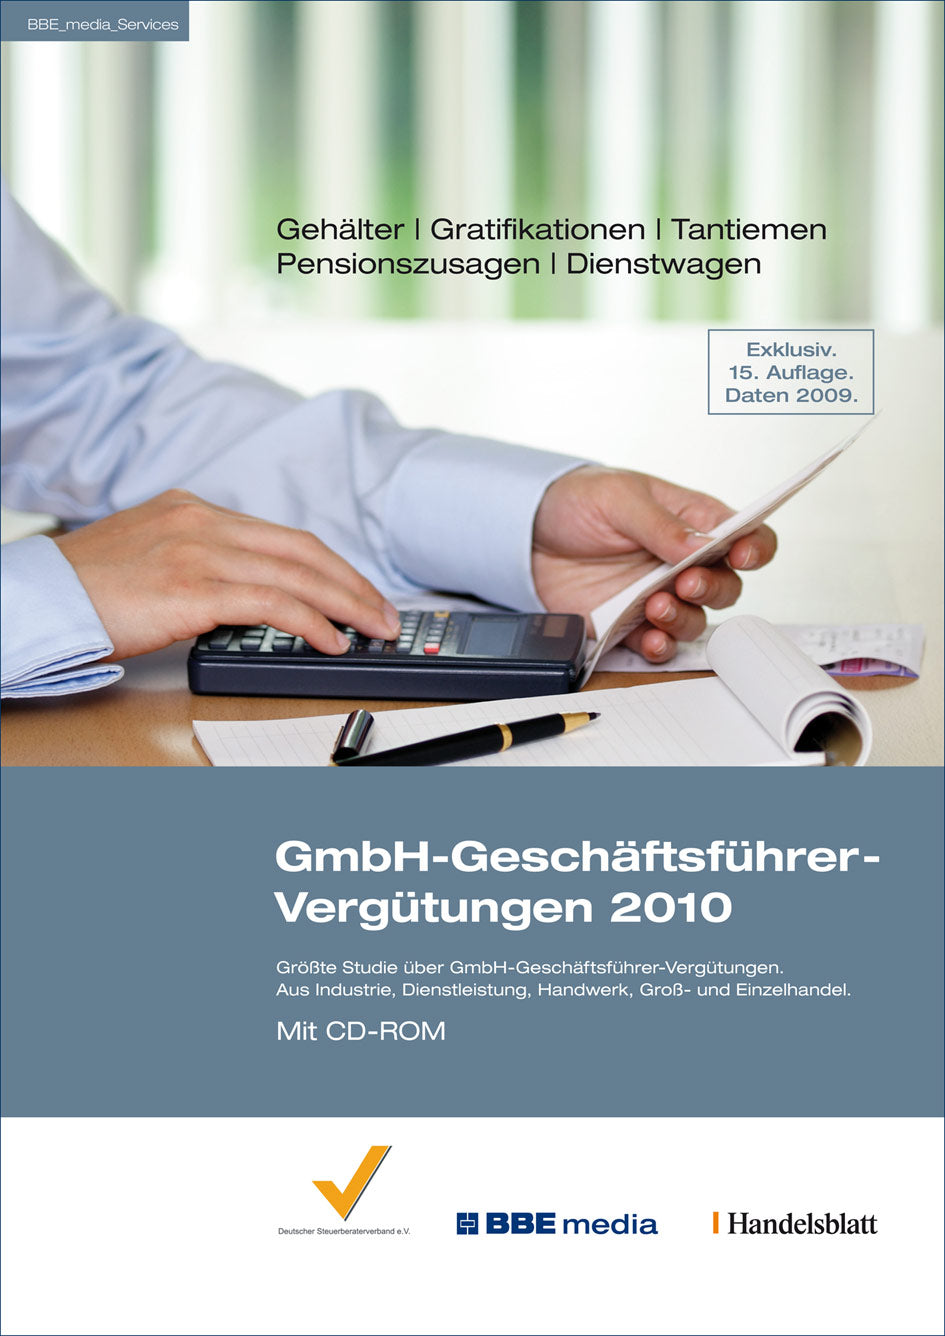 GmbH-Geschäftsführer-Vergütungen Jahrgang 2010